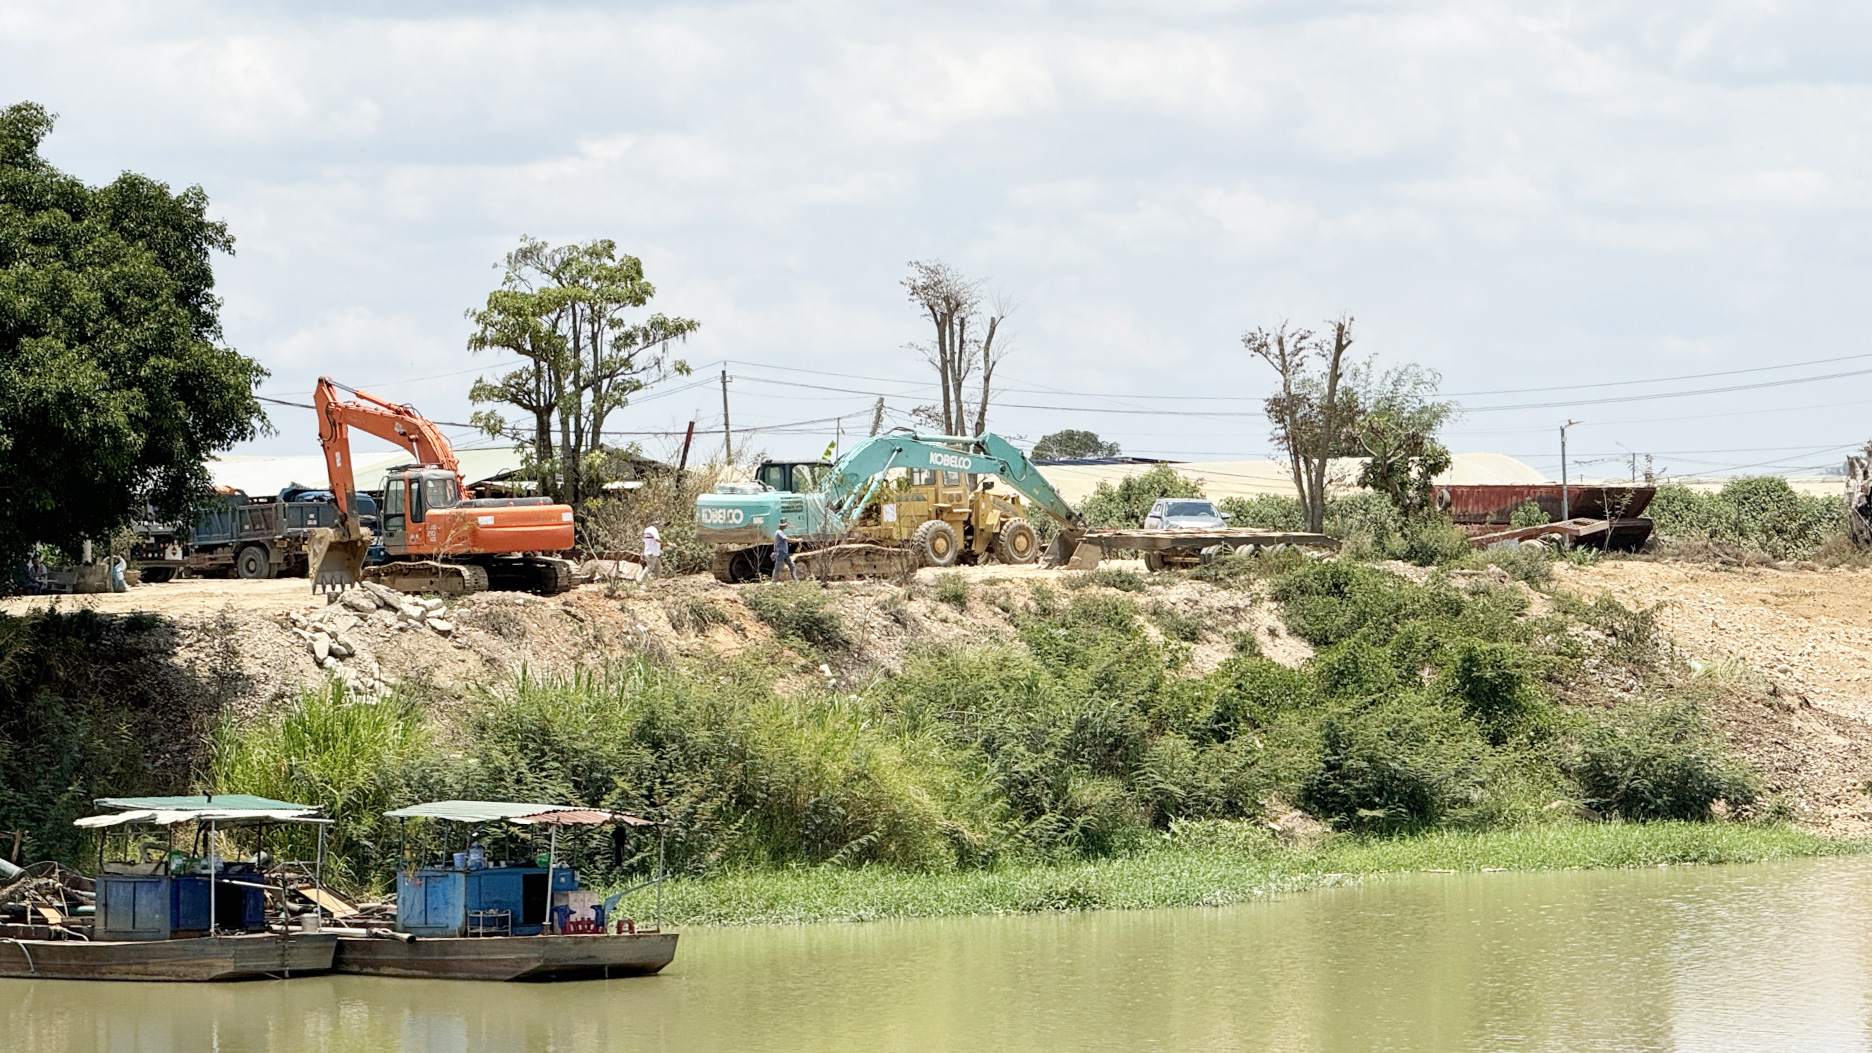 Đoàn Đại biểu Quốc hội tỉnh Lâm Đồng yêu cầu huyện Đơn Dương giải trình các vấn đề liên quan đến khai thác khoáng sản